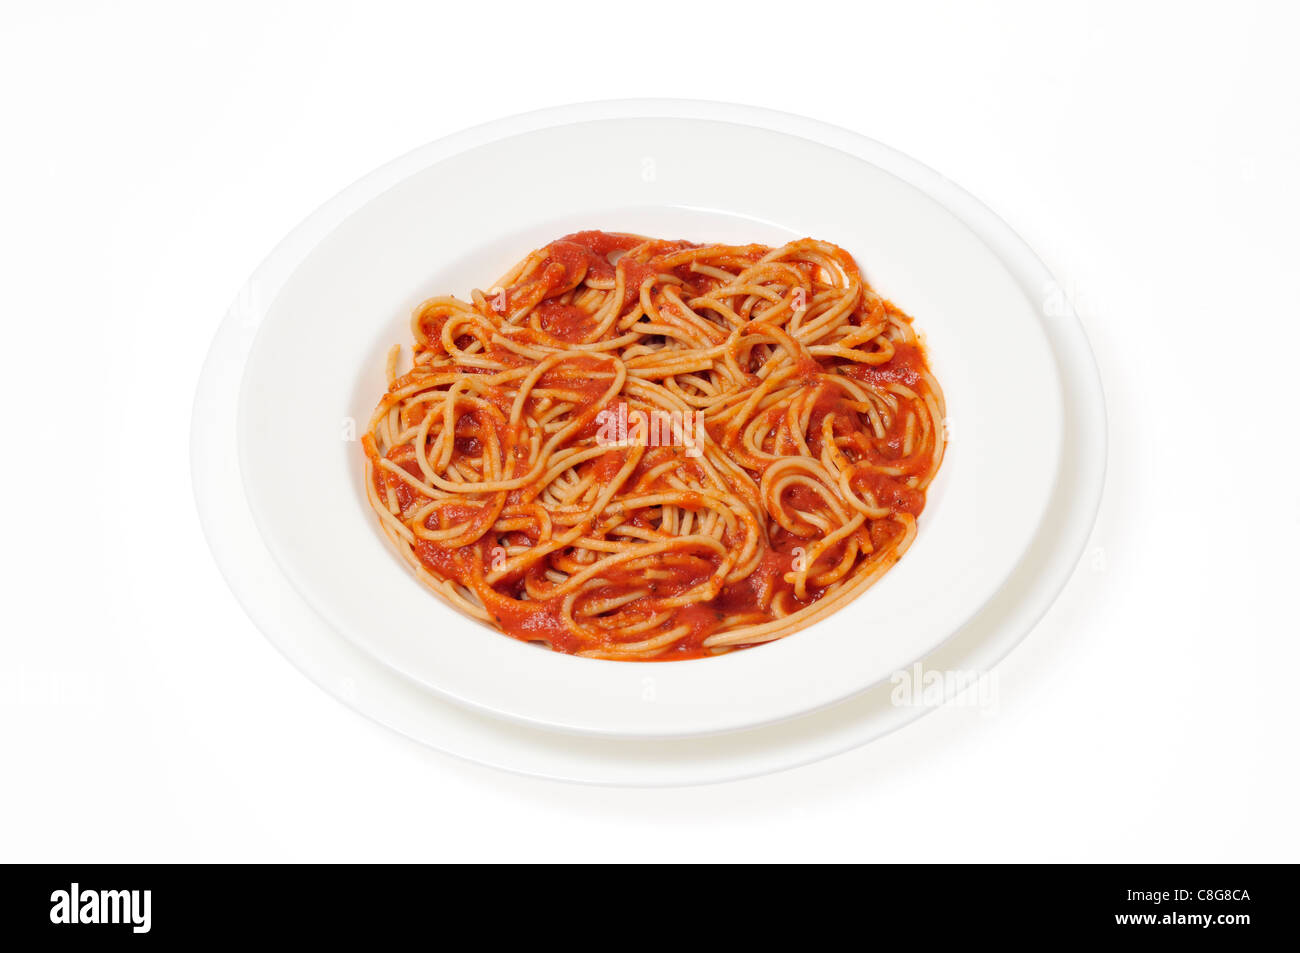 El trigo entero cocido espaguetis con salsa de tomate en el recipiente blanco sobre fondo blanco del recorte. Foto de stock